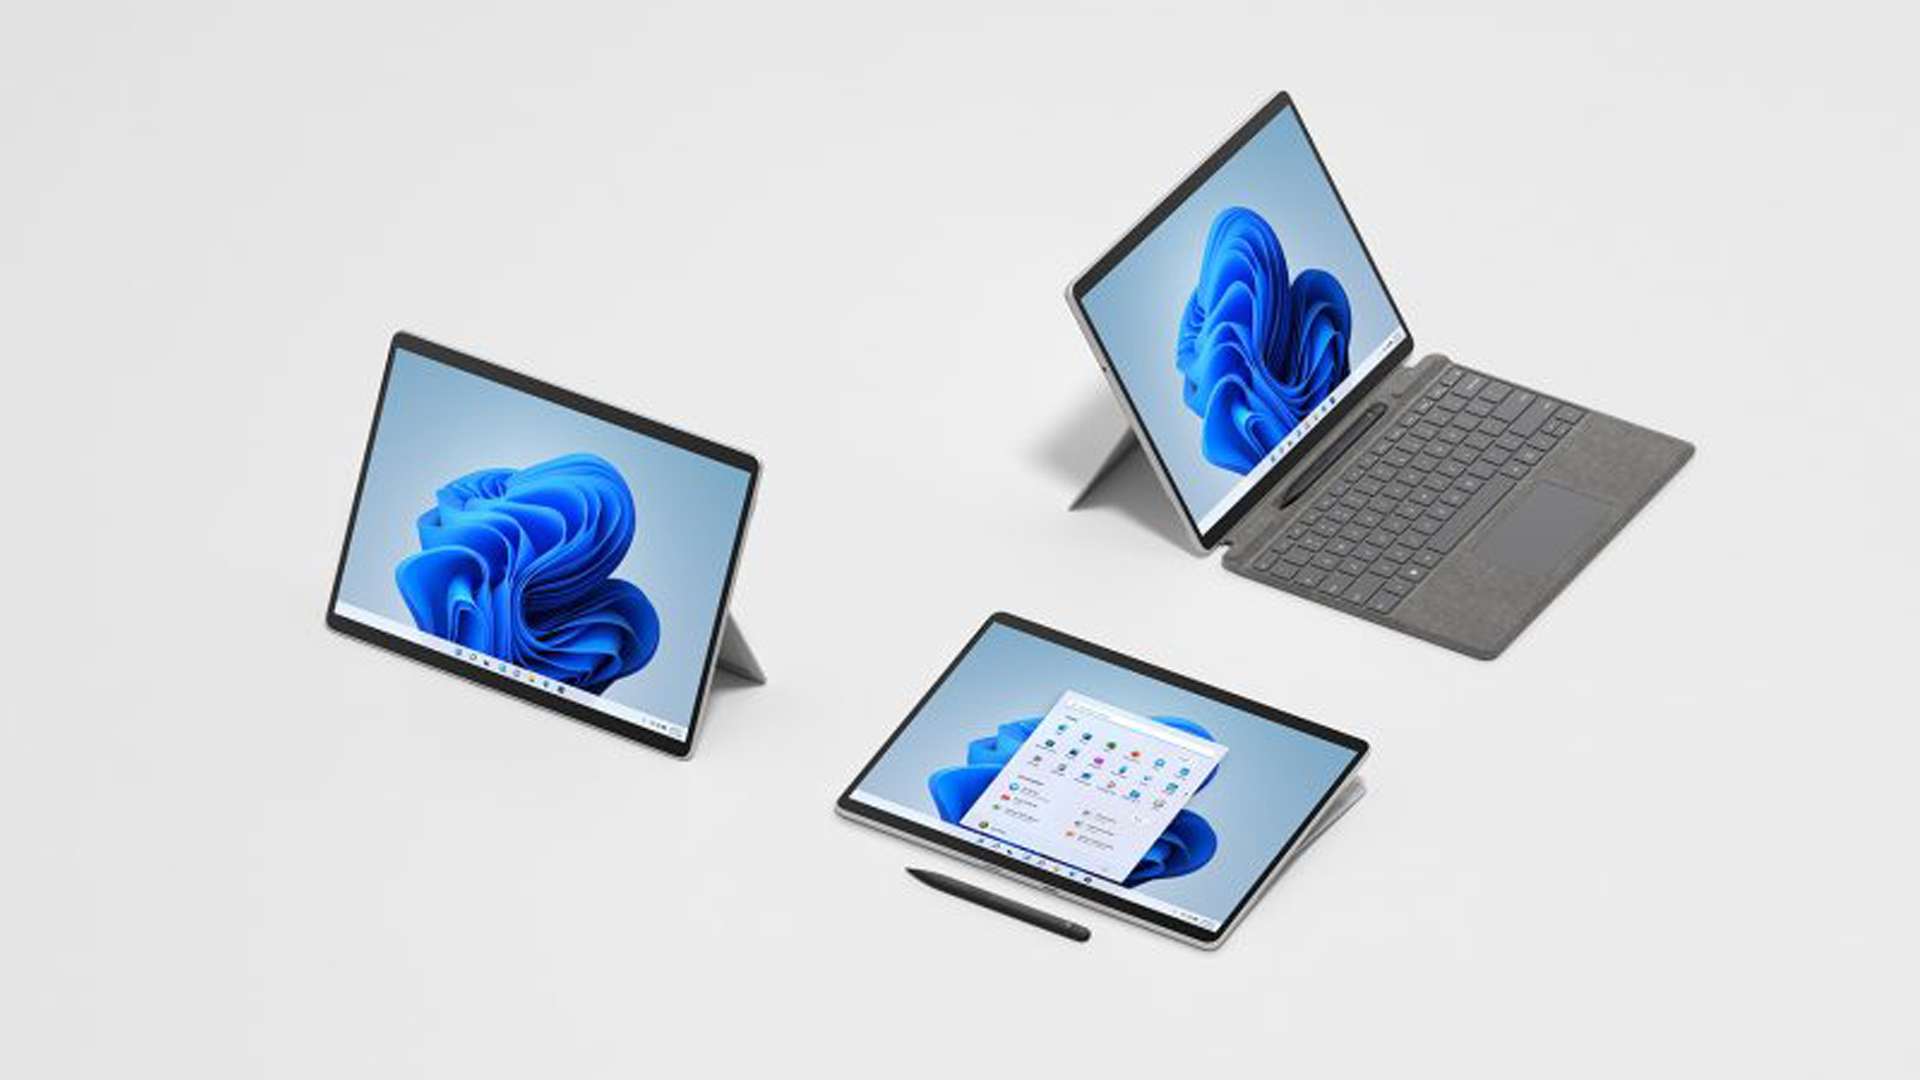 เตรียมพบกับ Surface Pro 8 ใหม่ อุปกรณ์ 2-in-1 อันทรงพลังและเหนือชั้นยิ่งกว่า